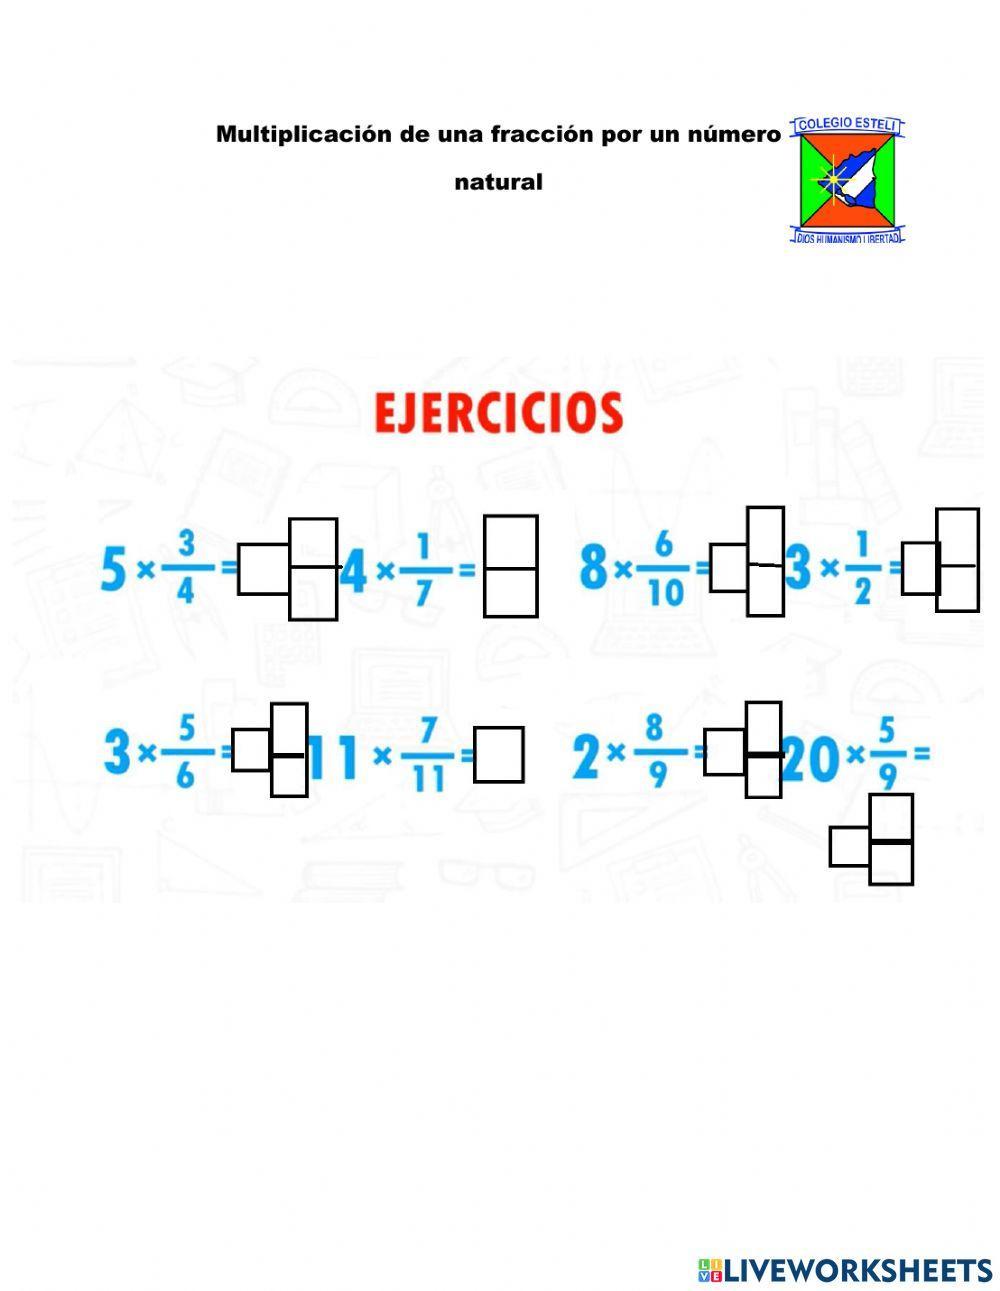 Multiplicación de una fracción por un numero entero